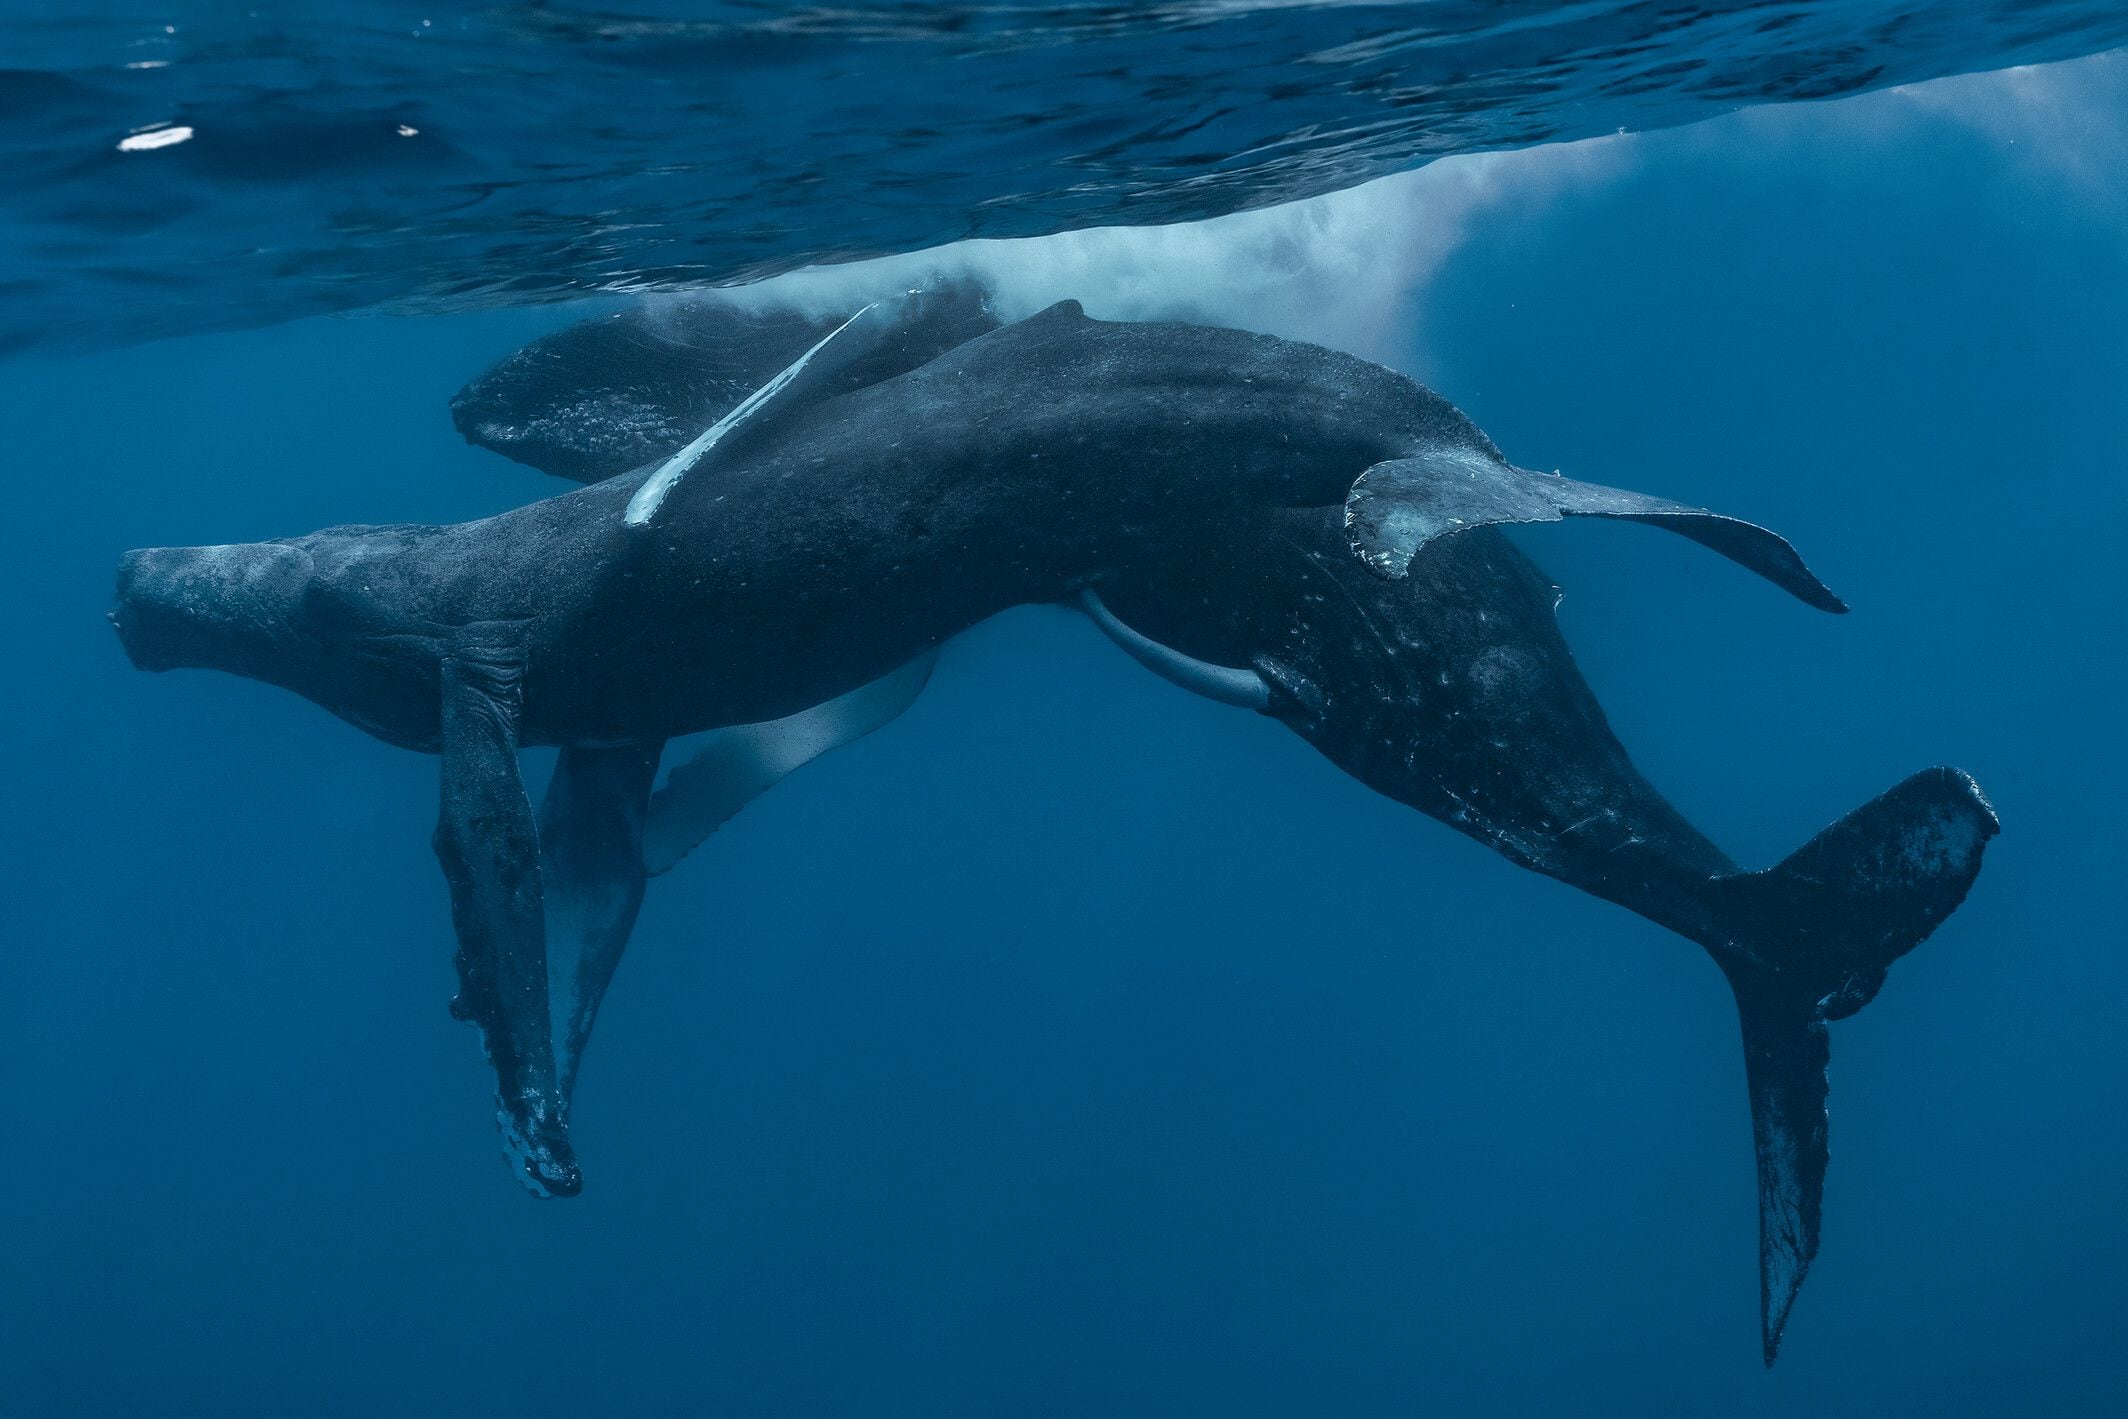 Los penes de las ballenas jorobadas machos suelen estar ocultos en lo que se conoce como una “hendidura genital” para hacerlos más estilizados mientras nadan. Foto: Lyle Krannichfeld y Brandi Romano